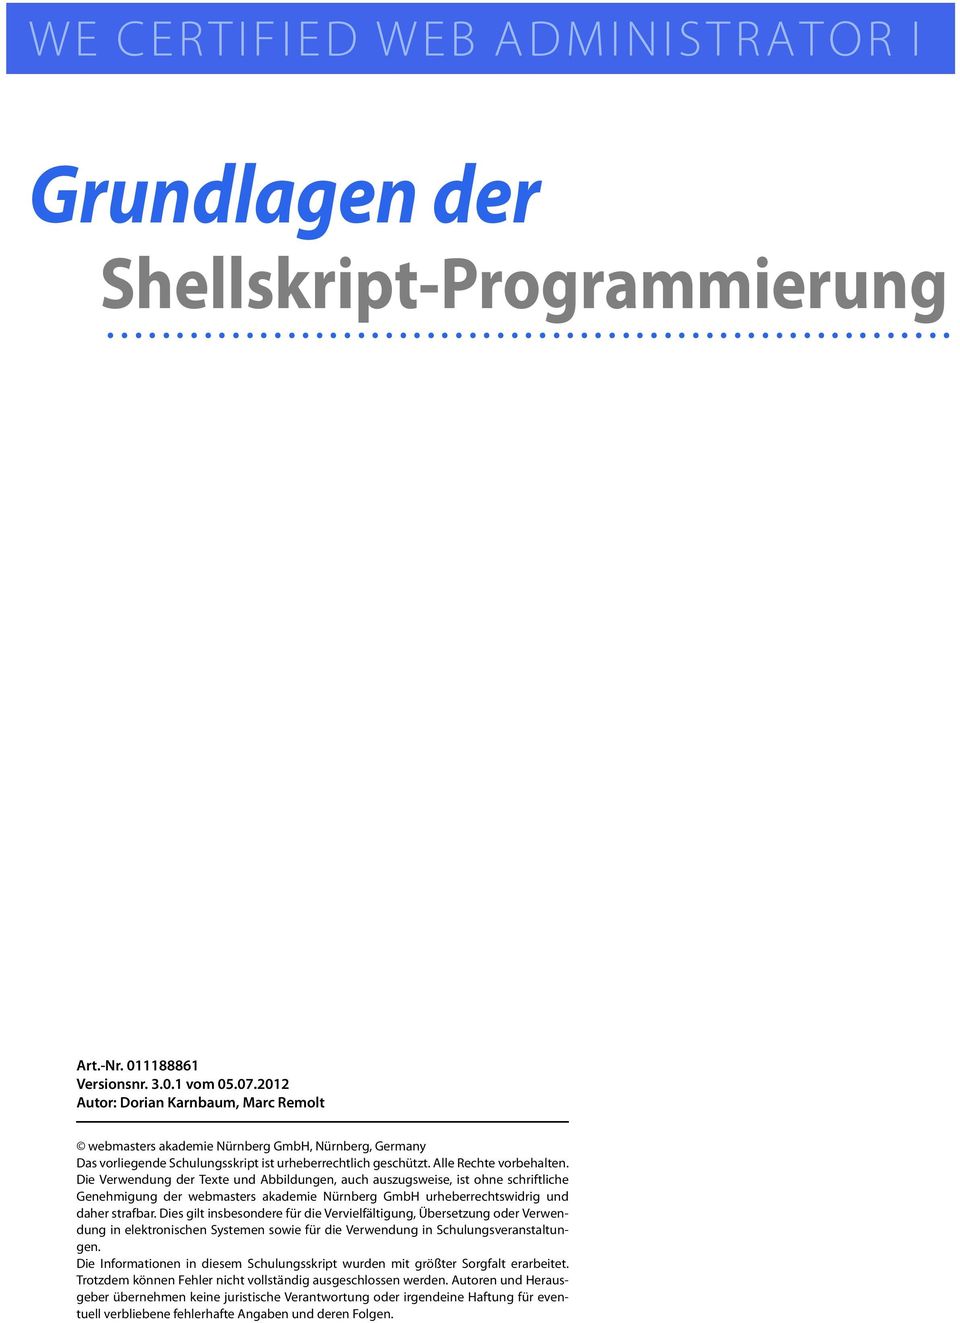 Die Verwendung der Texte und Abbildungen, auch auszugsweise, ist ohne schriftliche Genehmigung der webmasters akademie Nürnberg GmbH urheberrechtswidrig und daher strafbar.